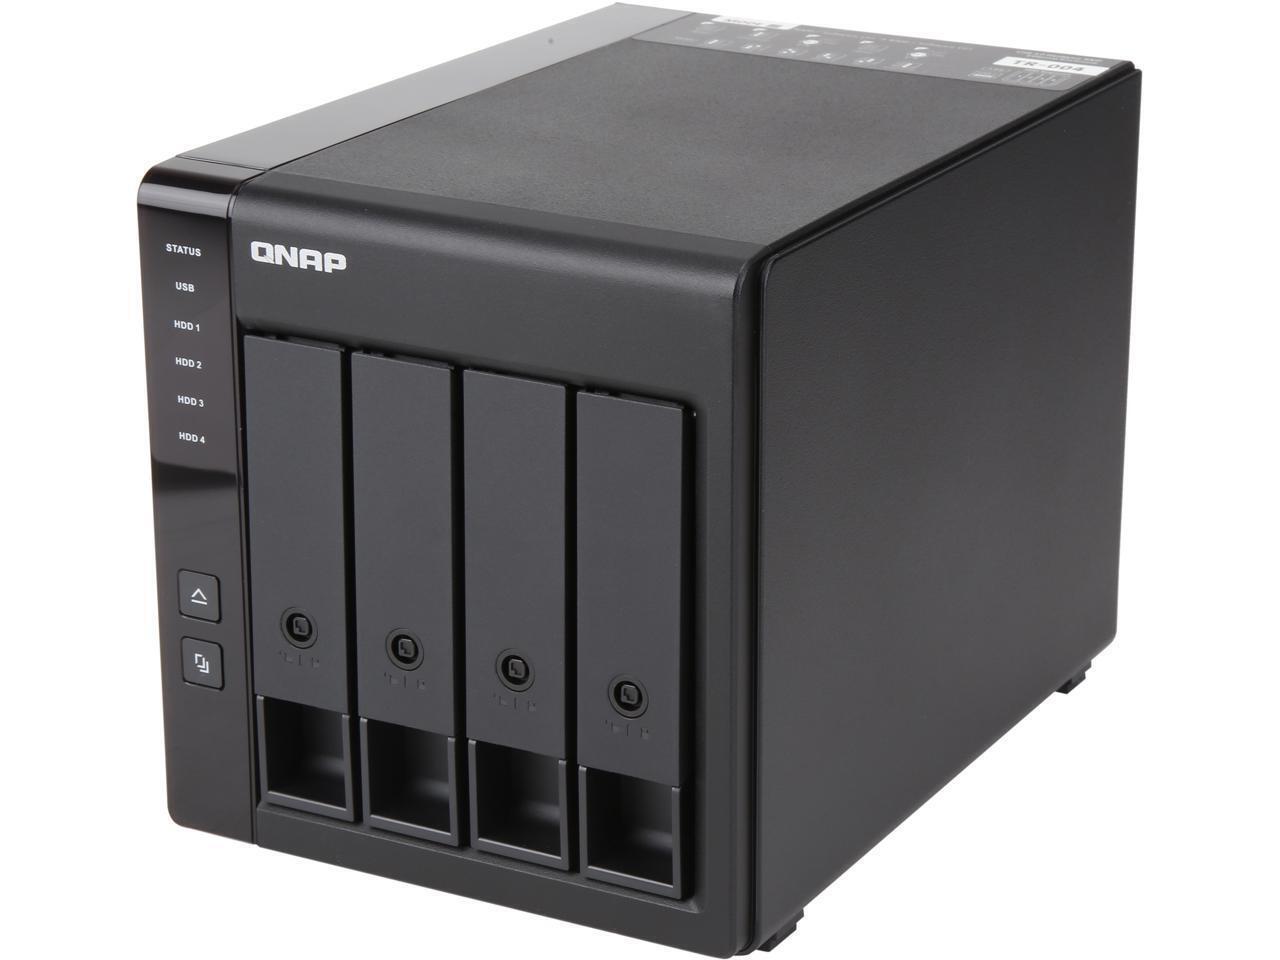 QNAP TR-004 USB 3.0 RAID - 4 x HDD Supported - Serial ATA/600 Controller - RAID